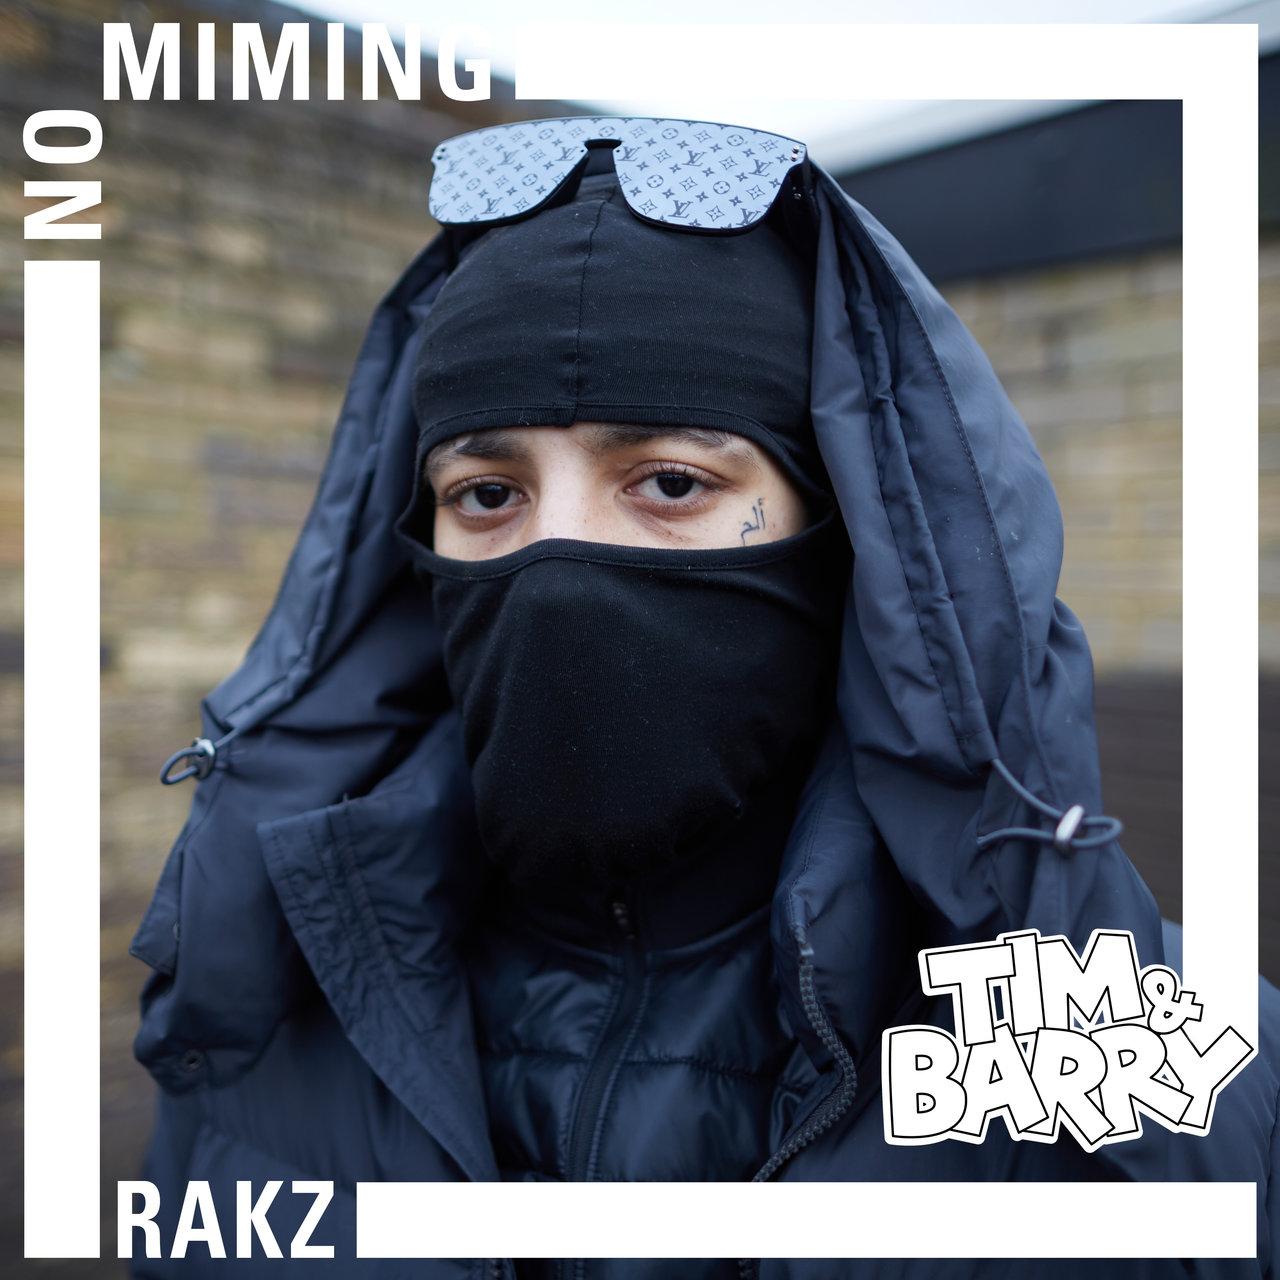 Rakz – No Mining